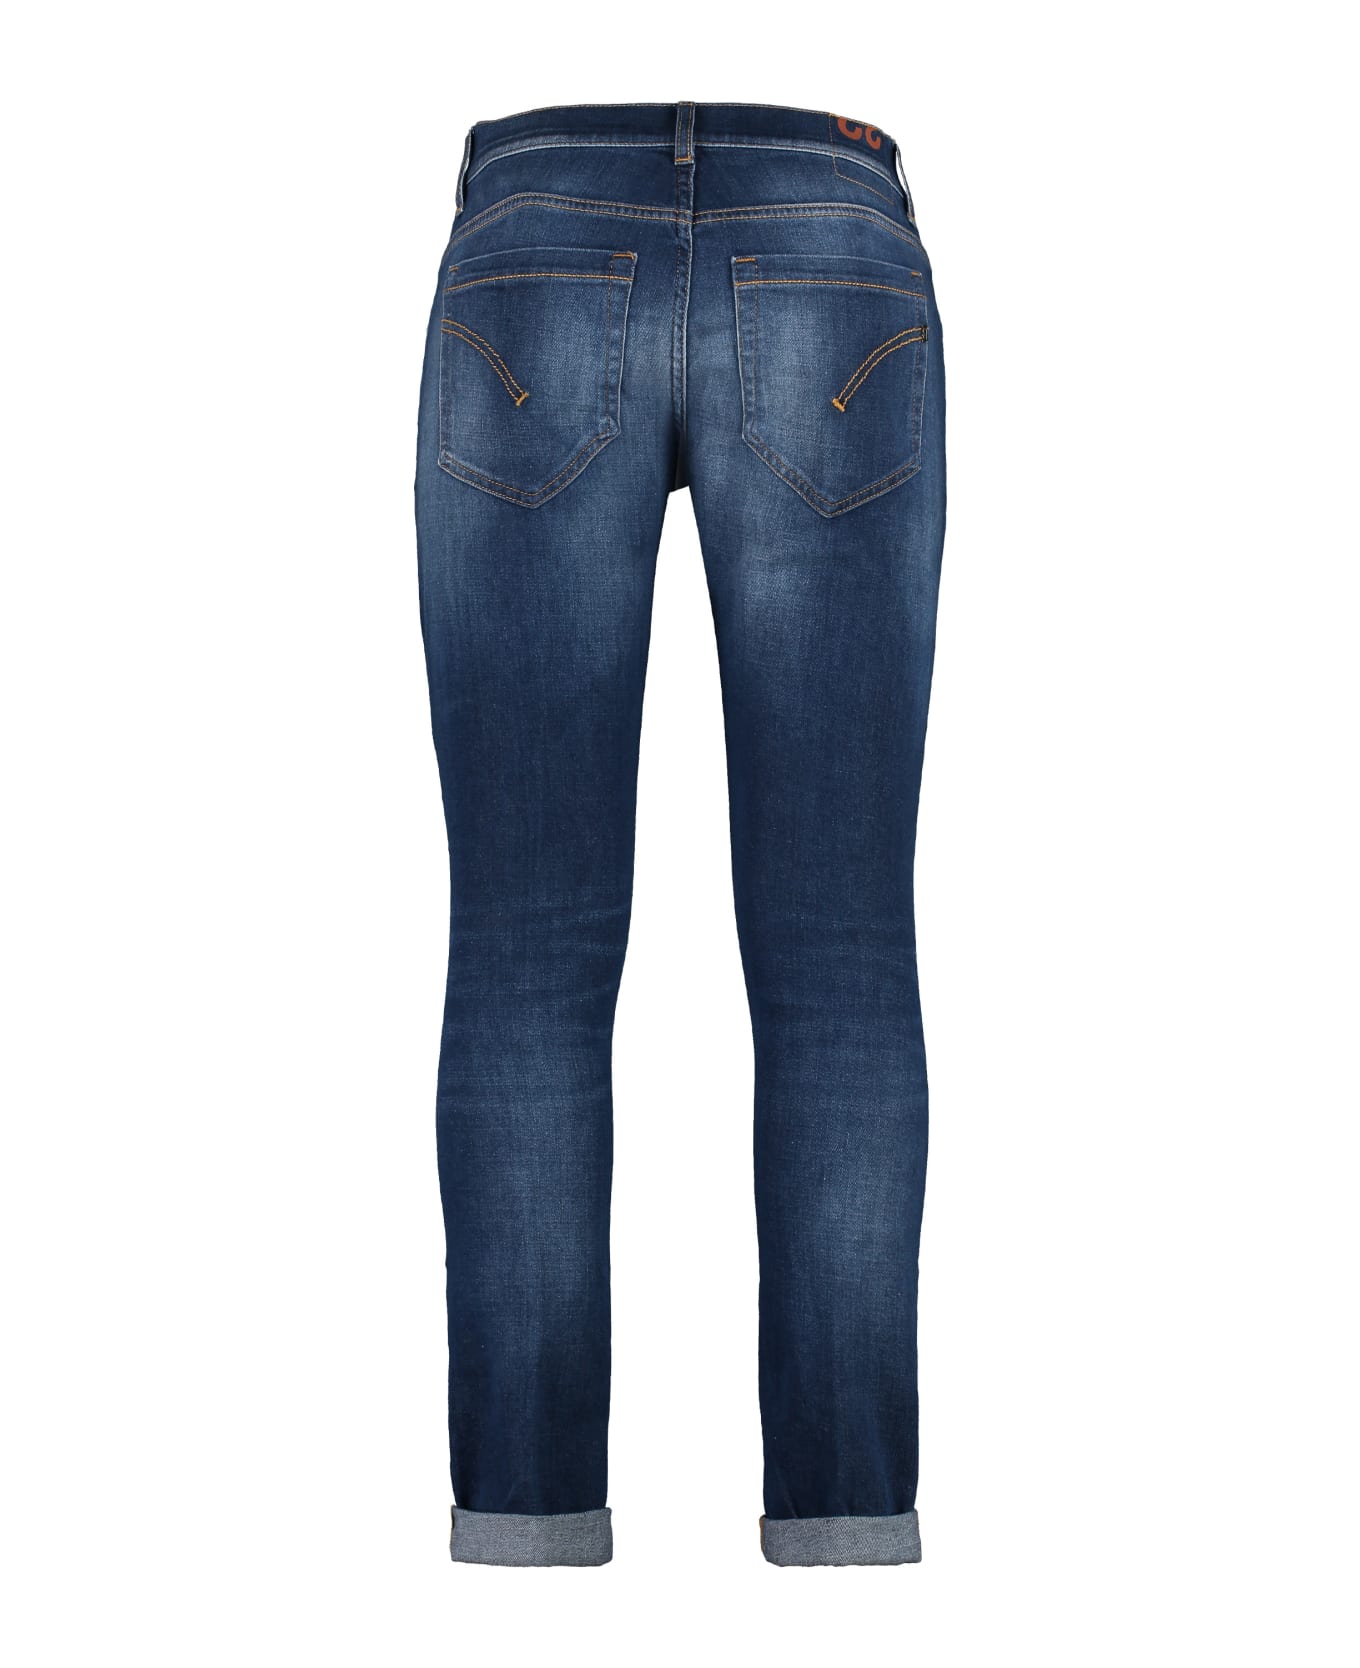 Dondup George 5-pocket Jeans - Denim